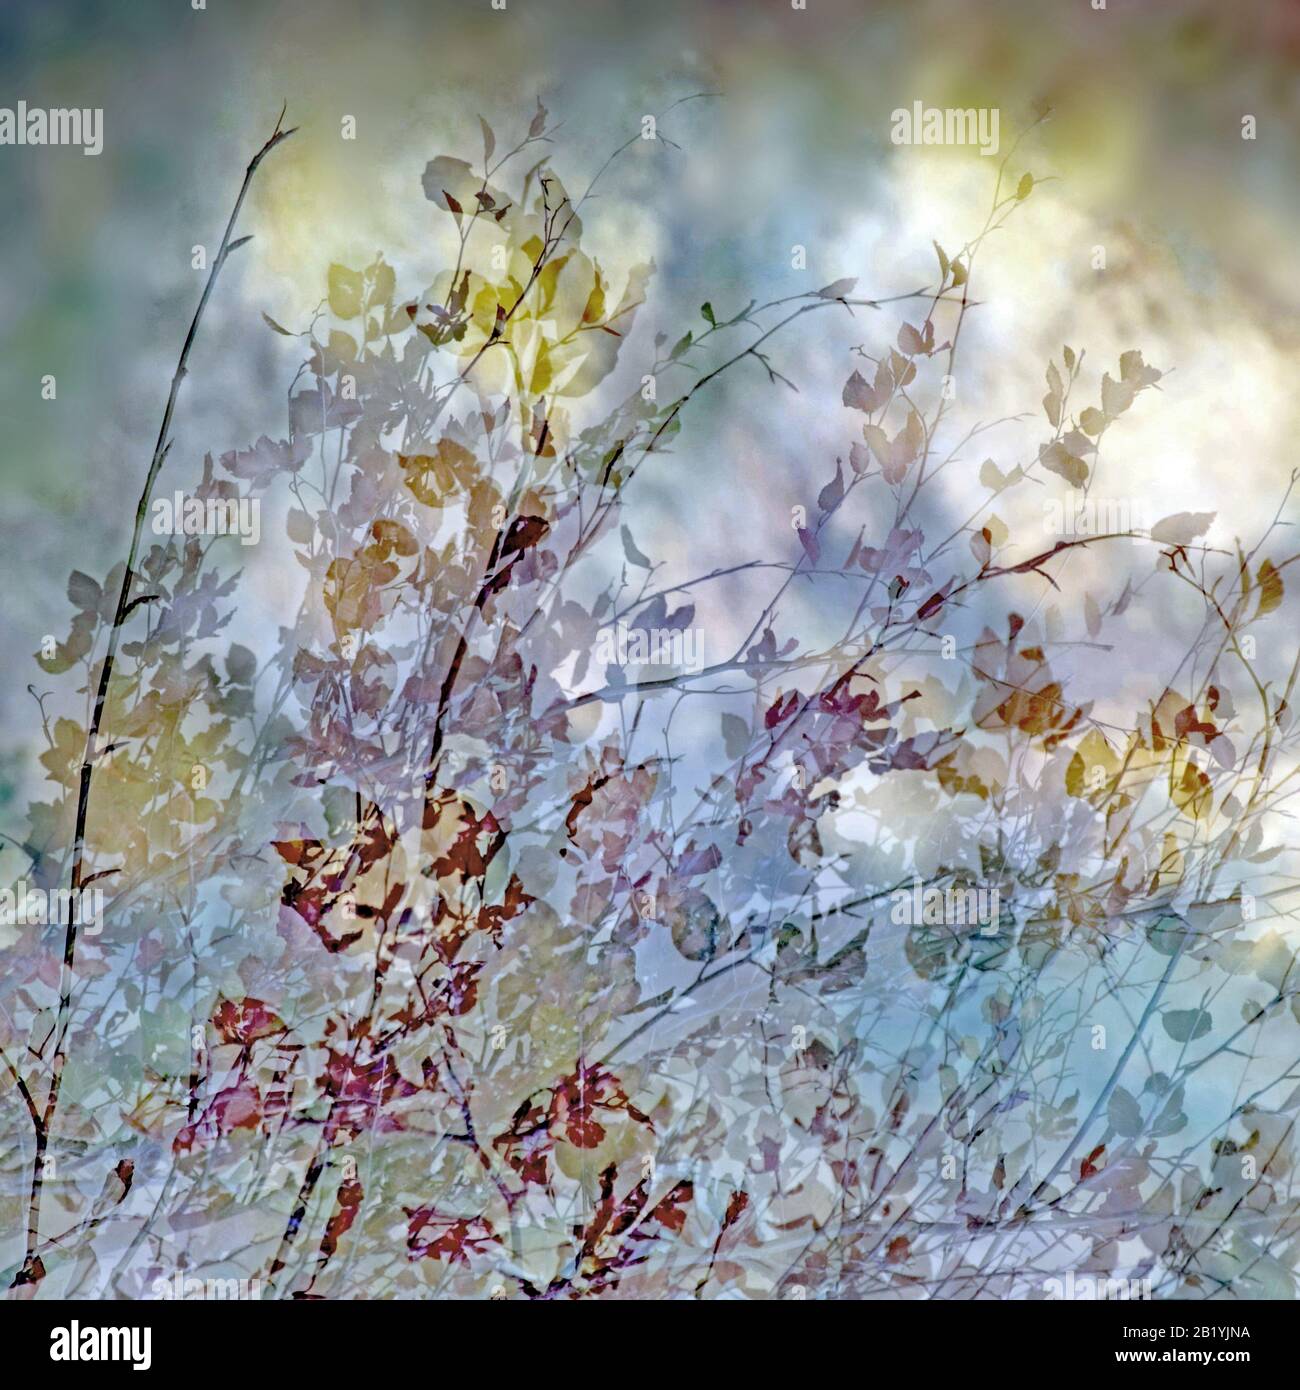 Fotografia artistica astratta e impressionistica in tonalità tonalità e tinte delle foreste e dei boschi di Cannock Chase che mostrano elementi di design co Foto Stock